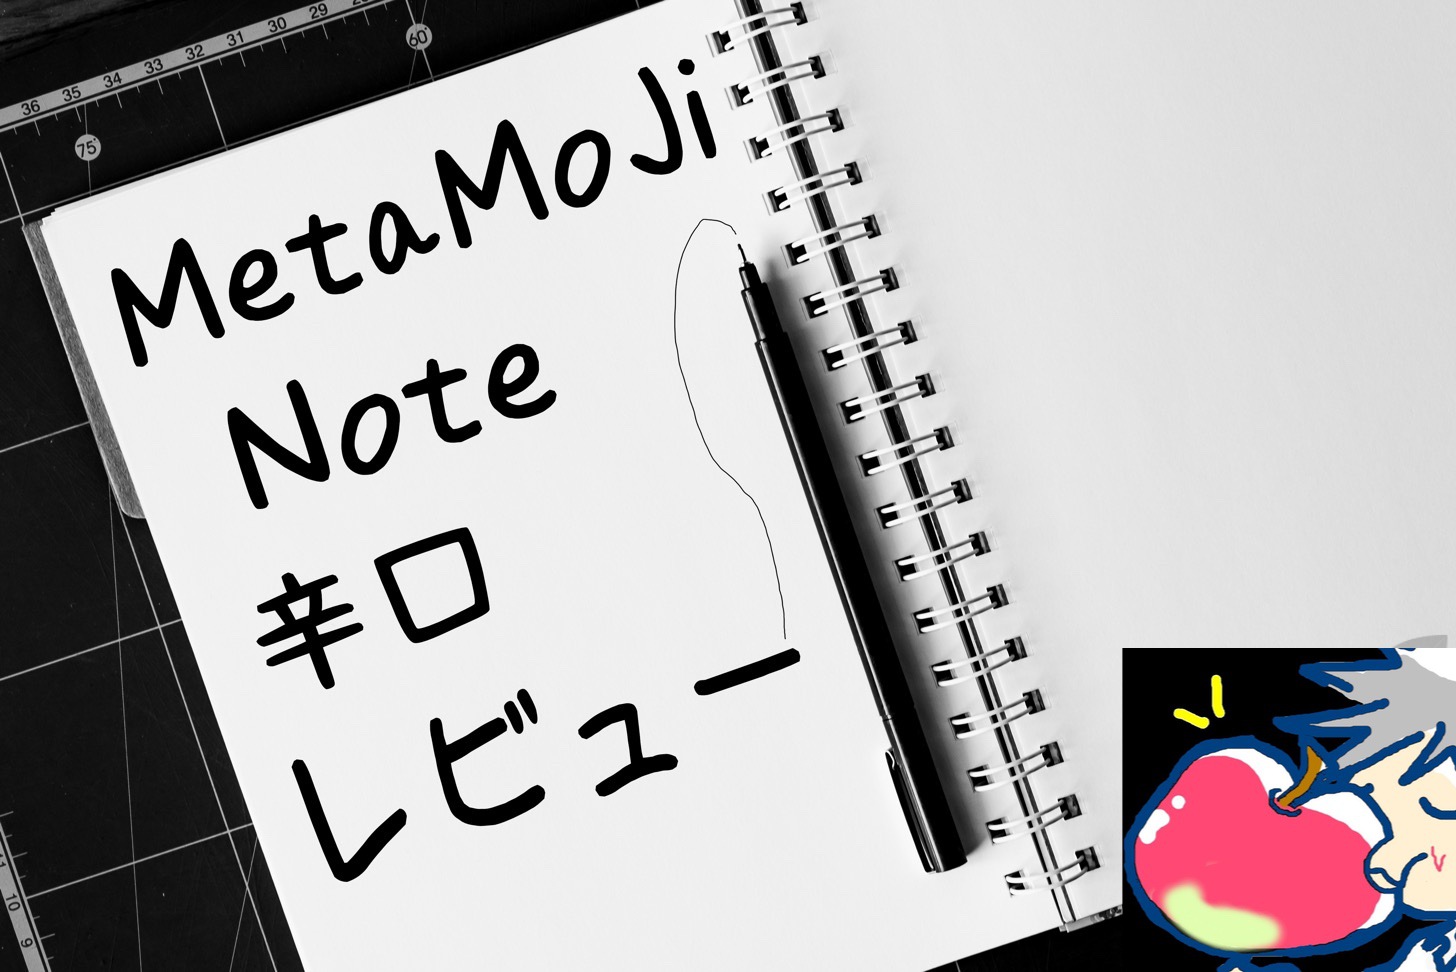 僕が人気アプリMetaMoJi Noteを使わない５つの理由【辛口レビュー】